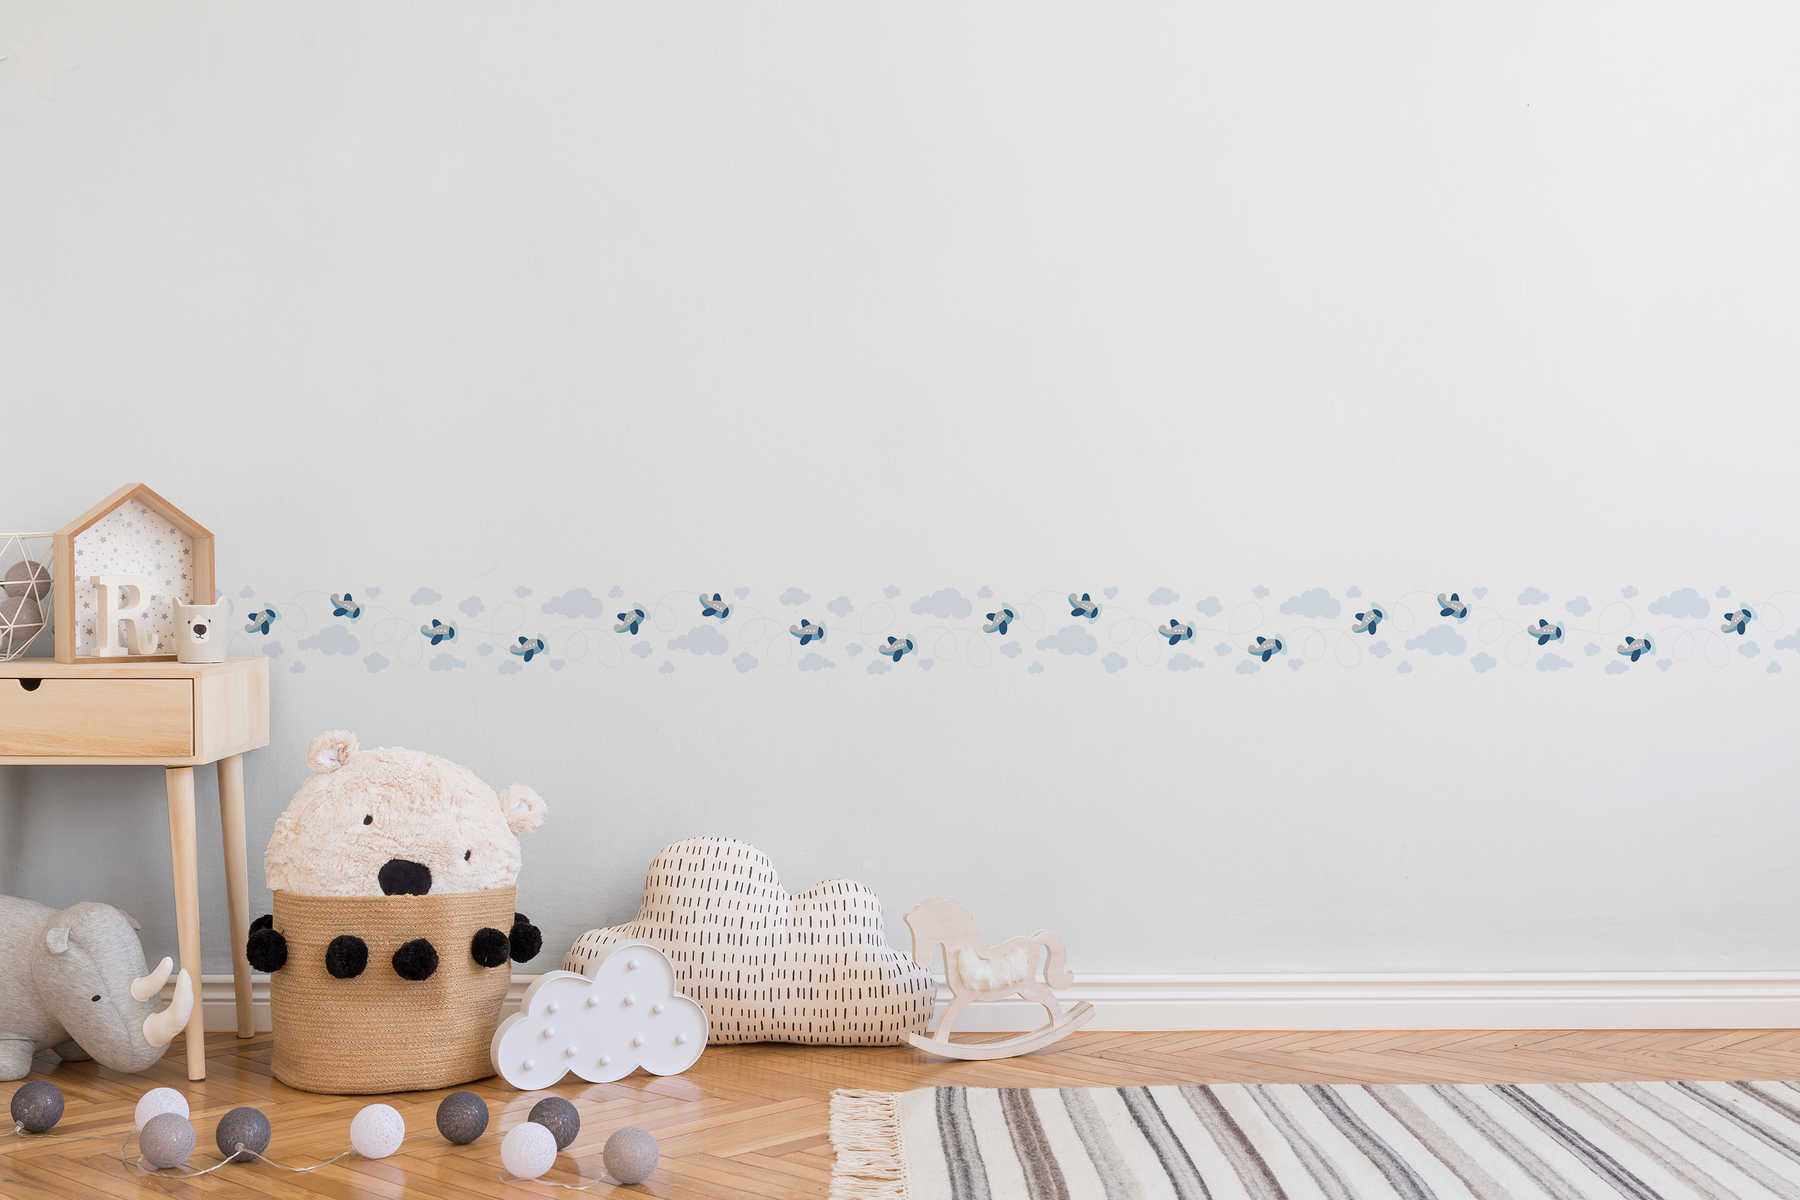             Breezy Outlook Frontera de la habitación del bebé para los niños - azul, gris, blanco
        